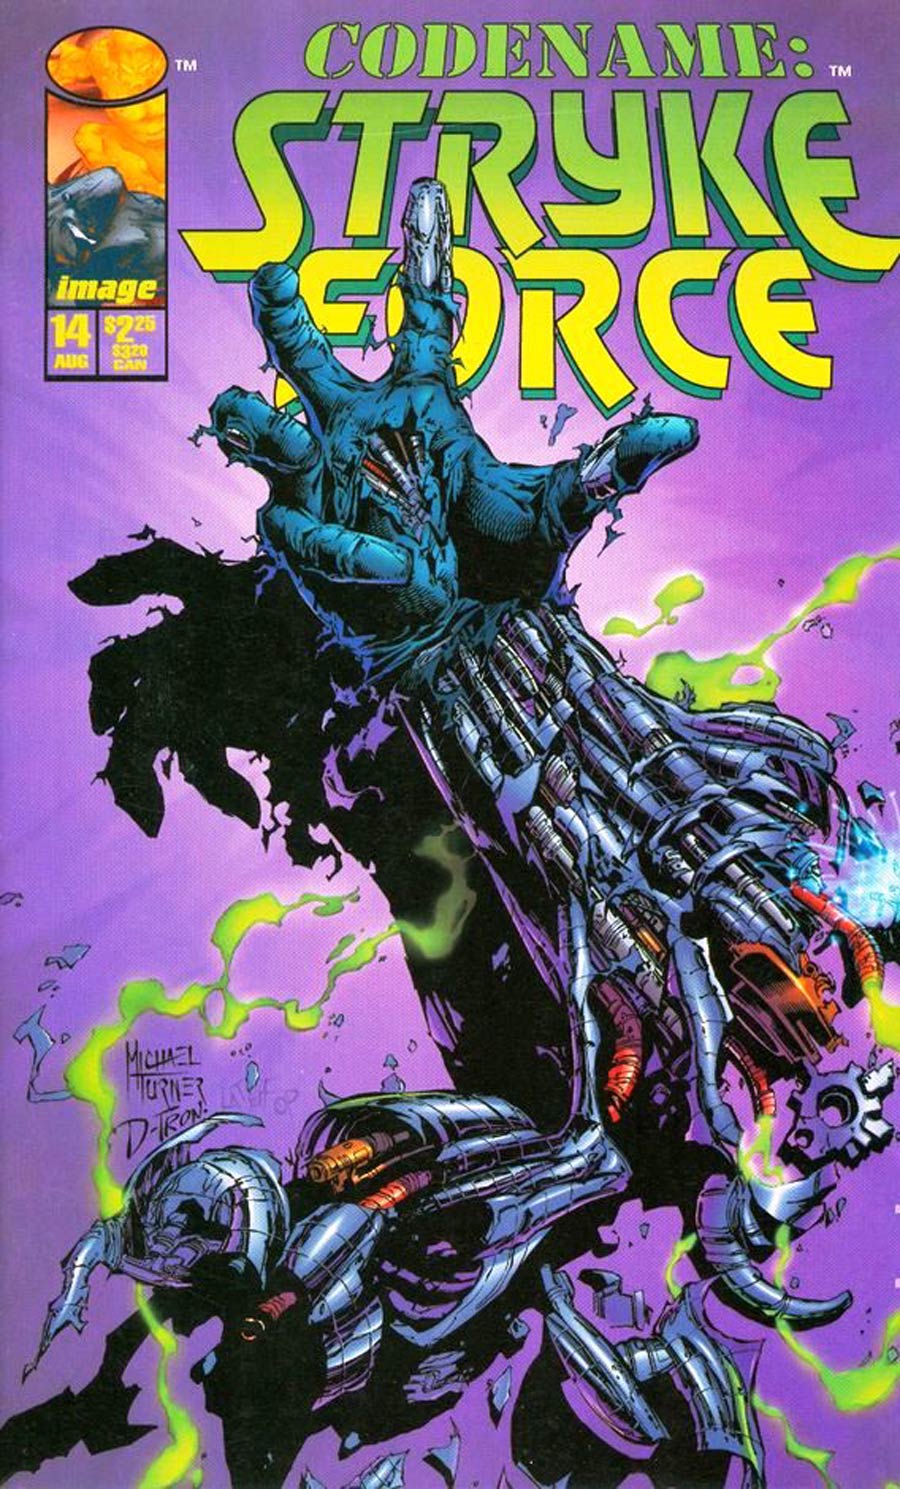 Codename Stryke Force #14